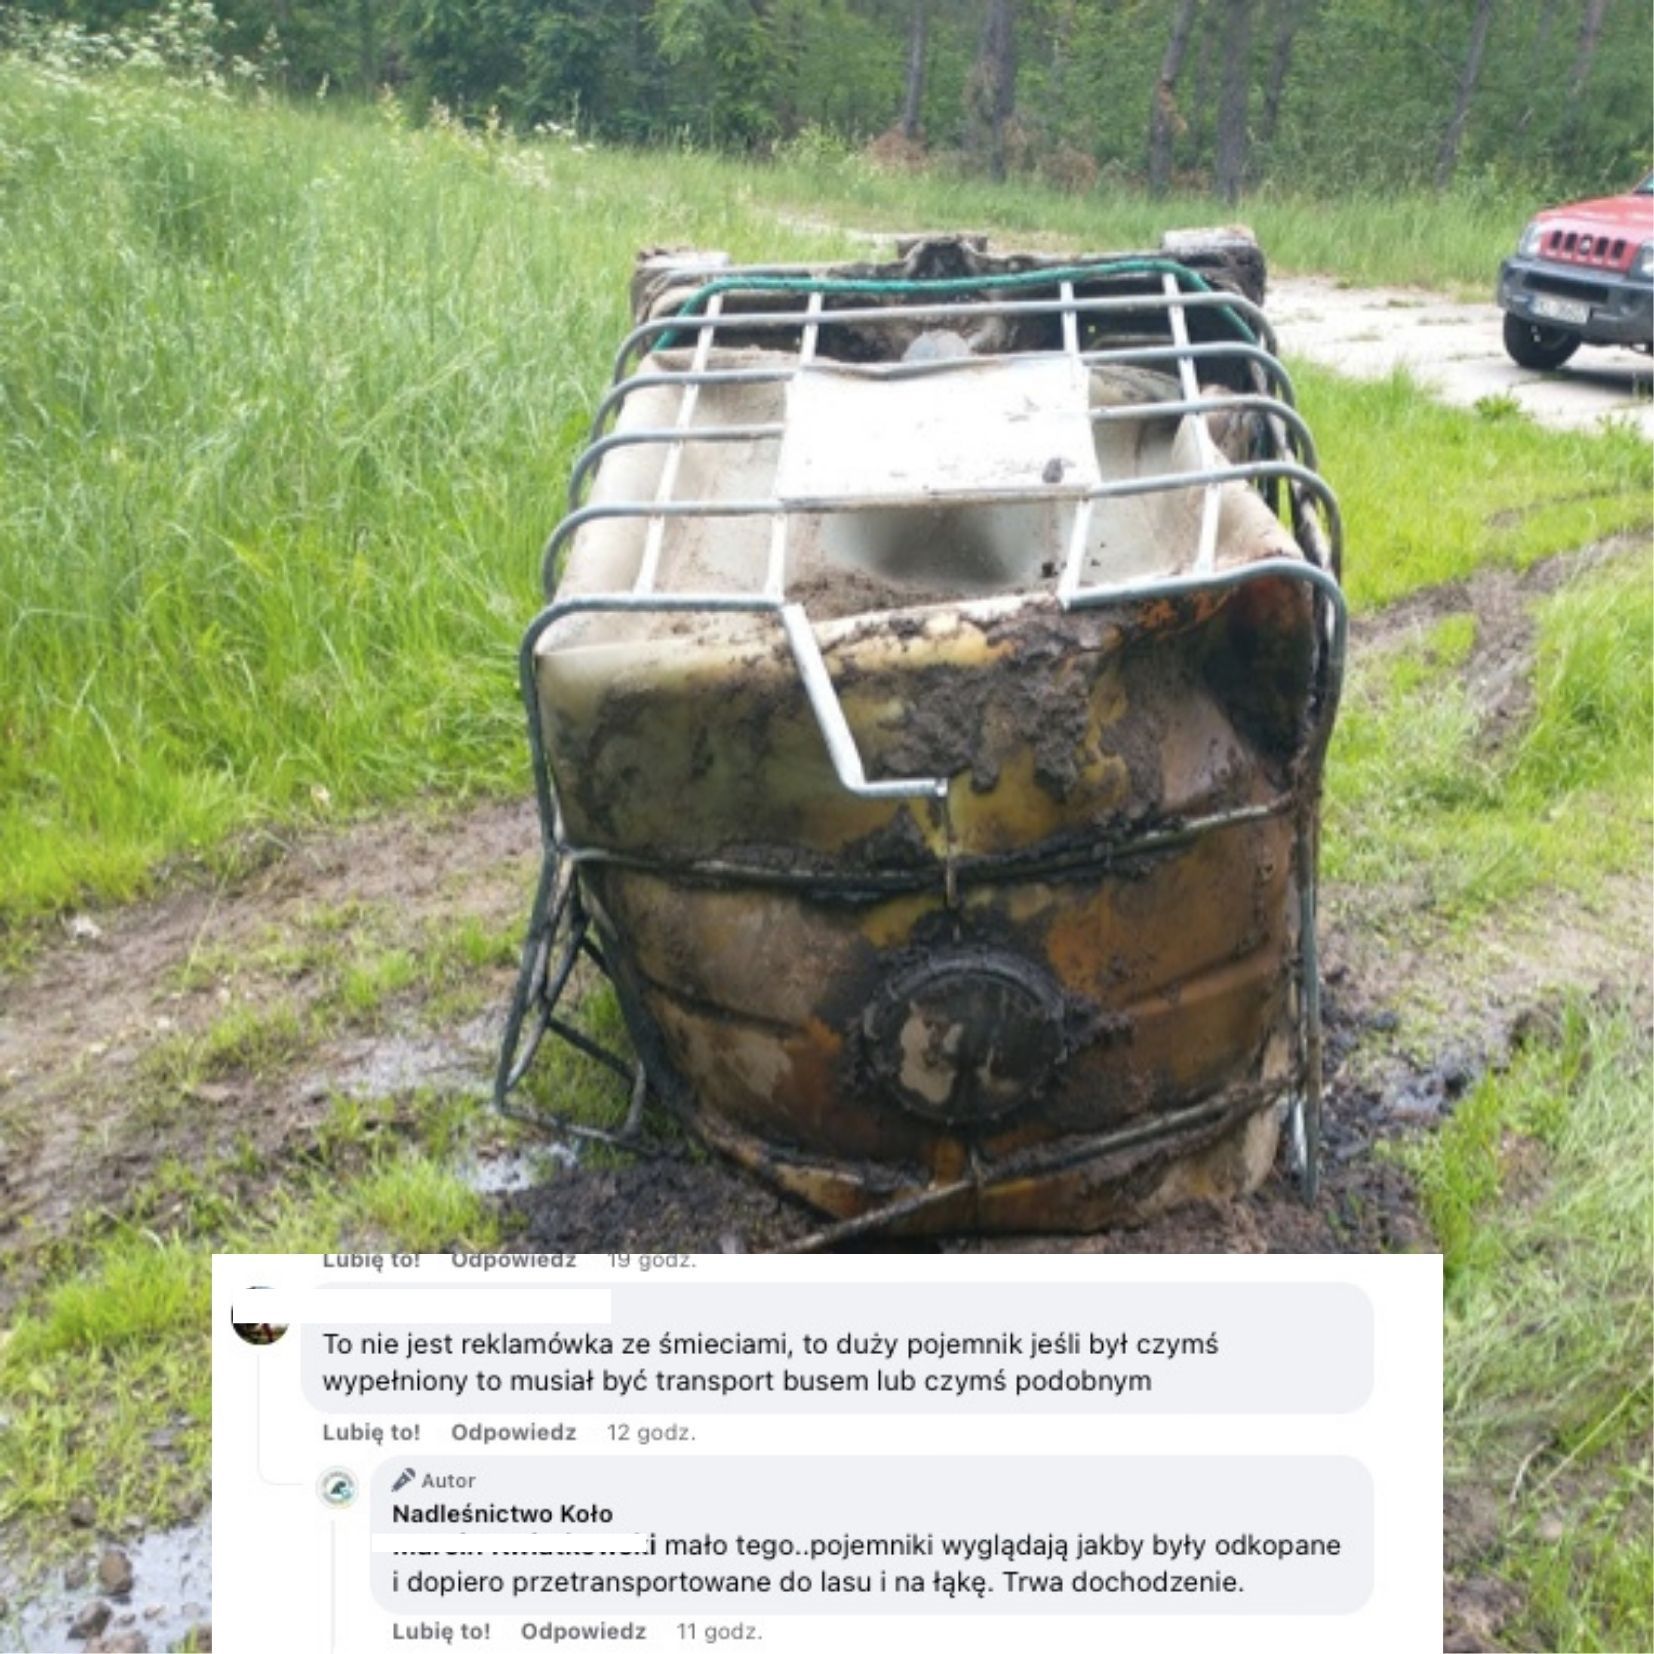 Koło: w lesie znaleziono pojemniki z nieznaną substancją